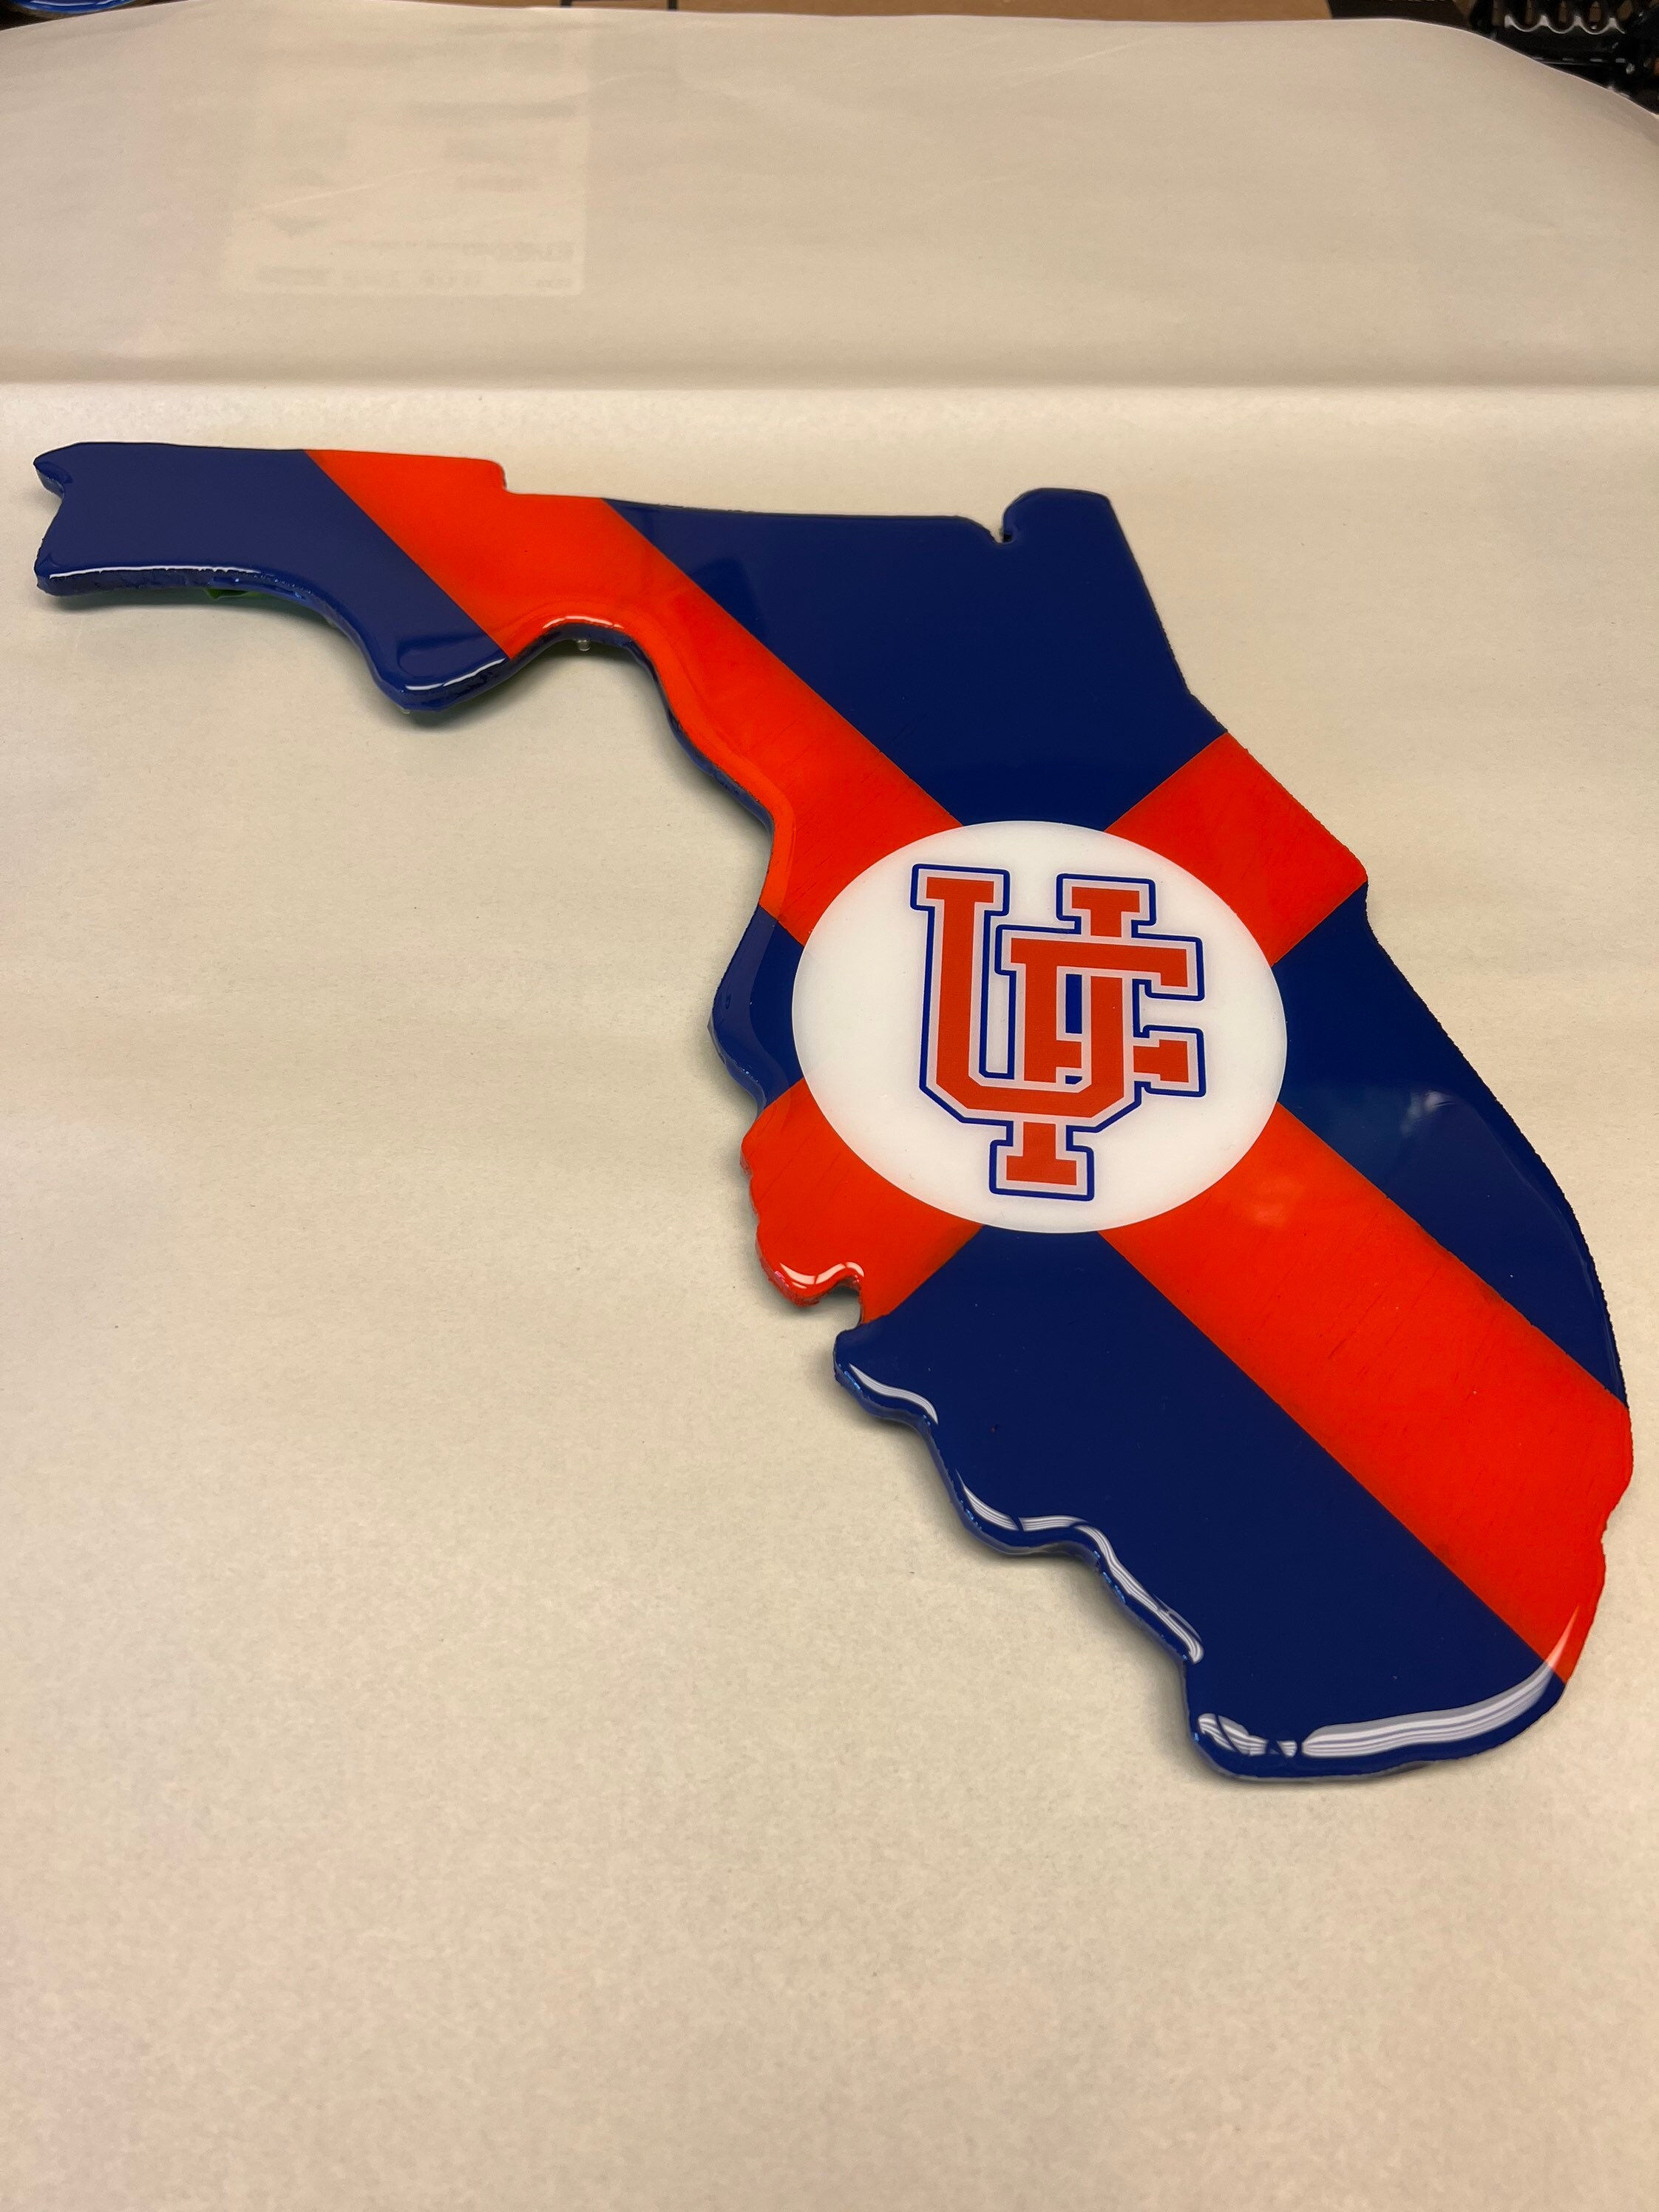 UF Logo Gators State of Florida Wall Art 